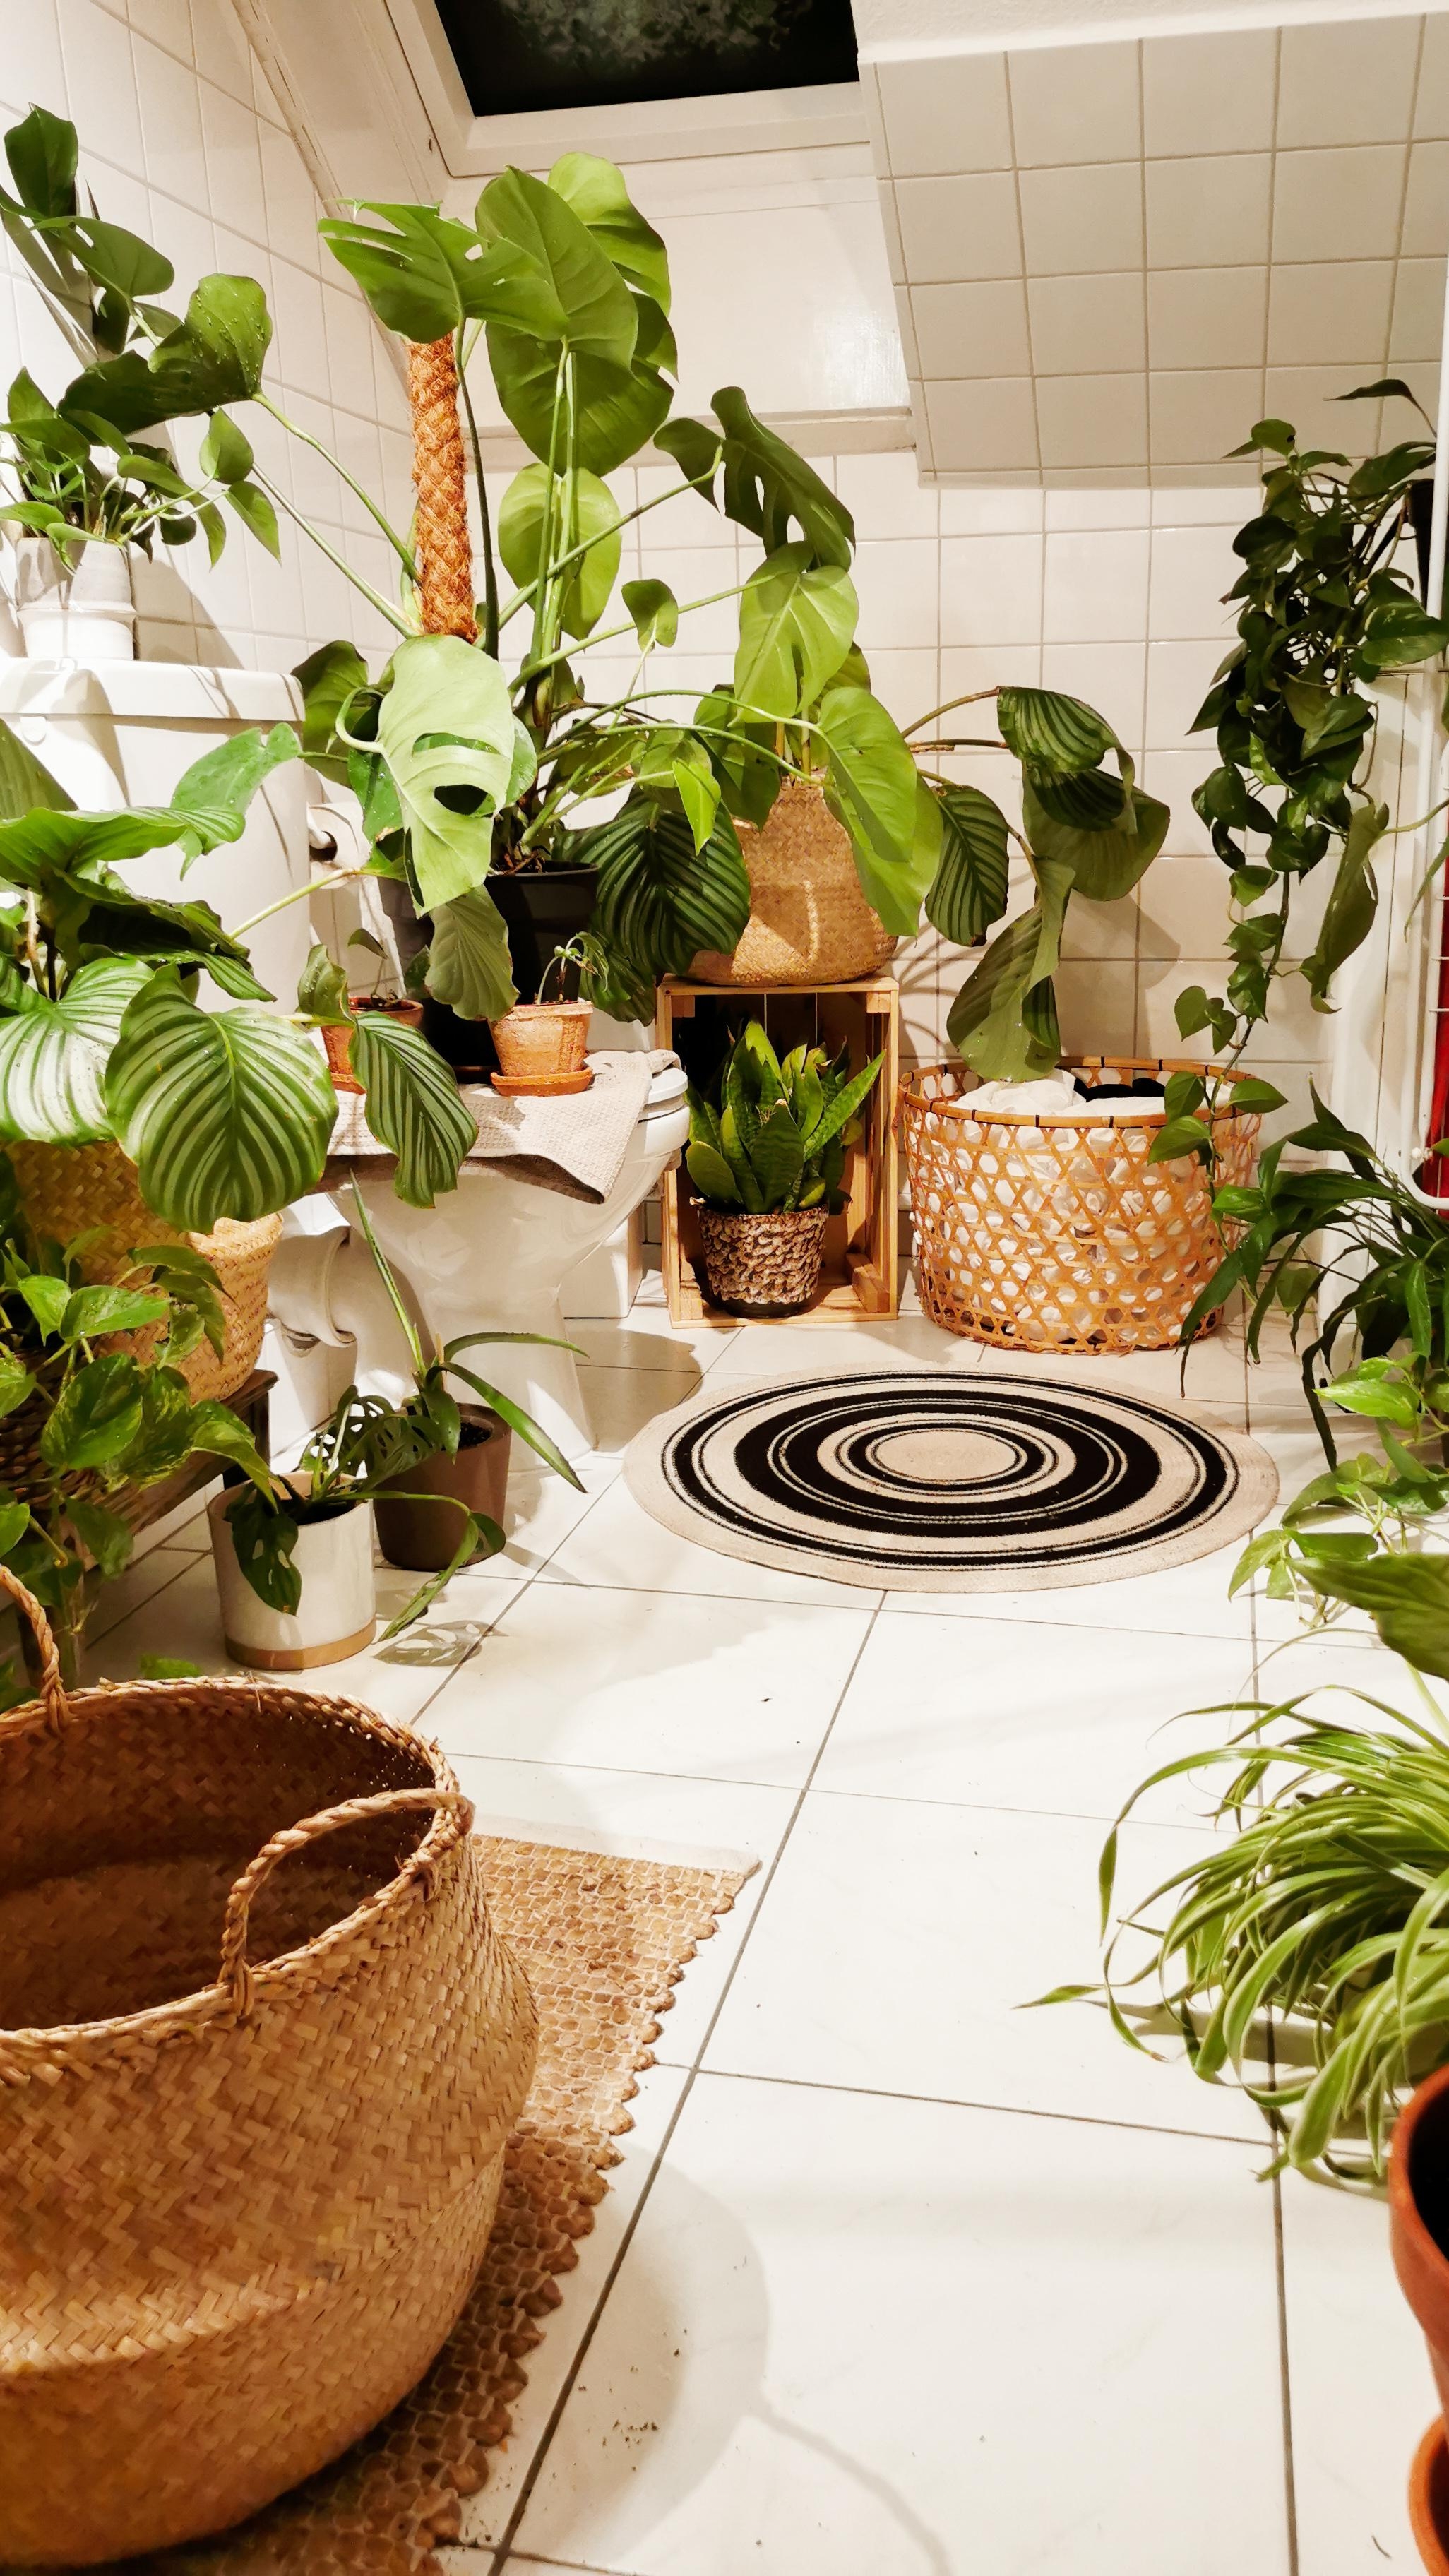 Pflanzen-Waschtag im Badezimmer. #pflanzenliebe #urbanjungle #plantgang #badezimmer #boho